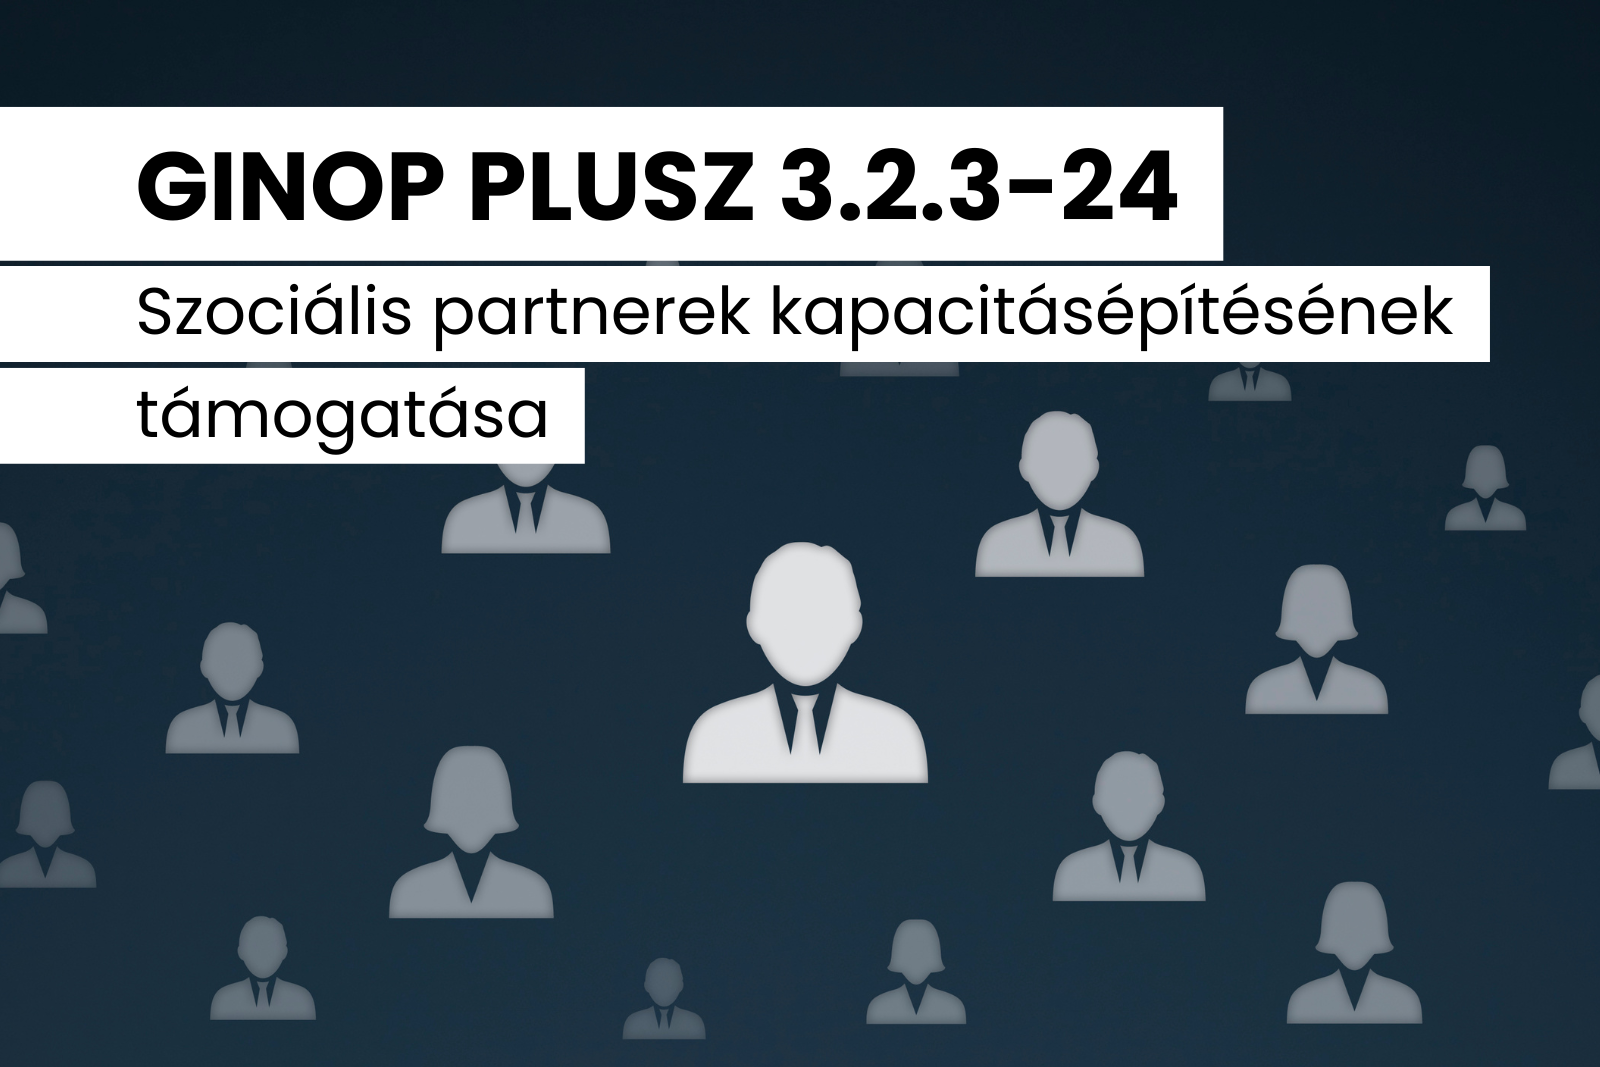 GINOP PLUSZ 3.2.3-24